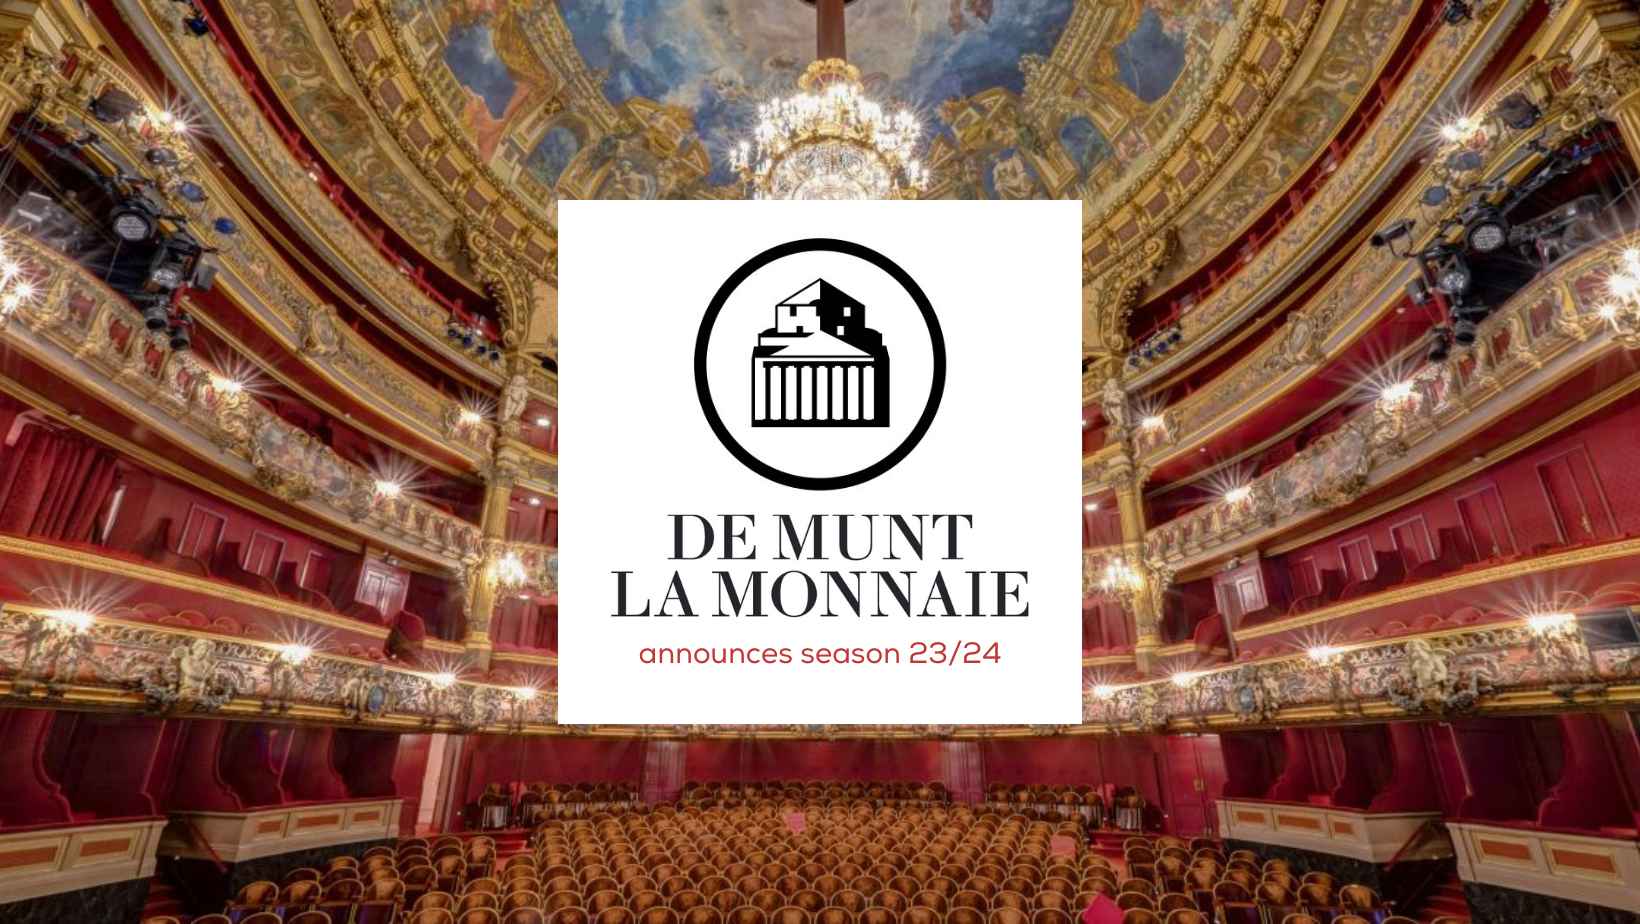 La Monnaie Opera House has announced season 23-24